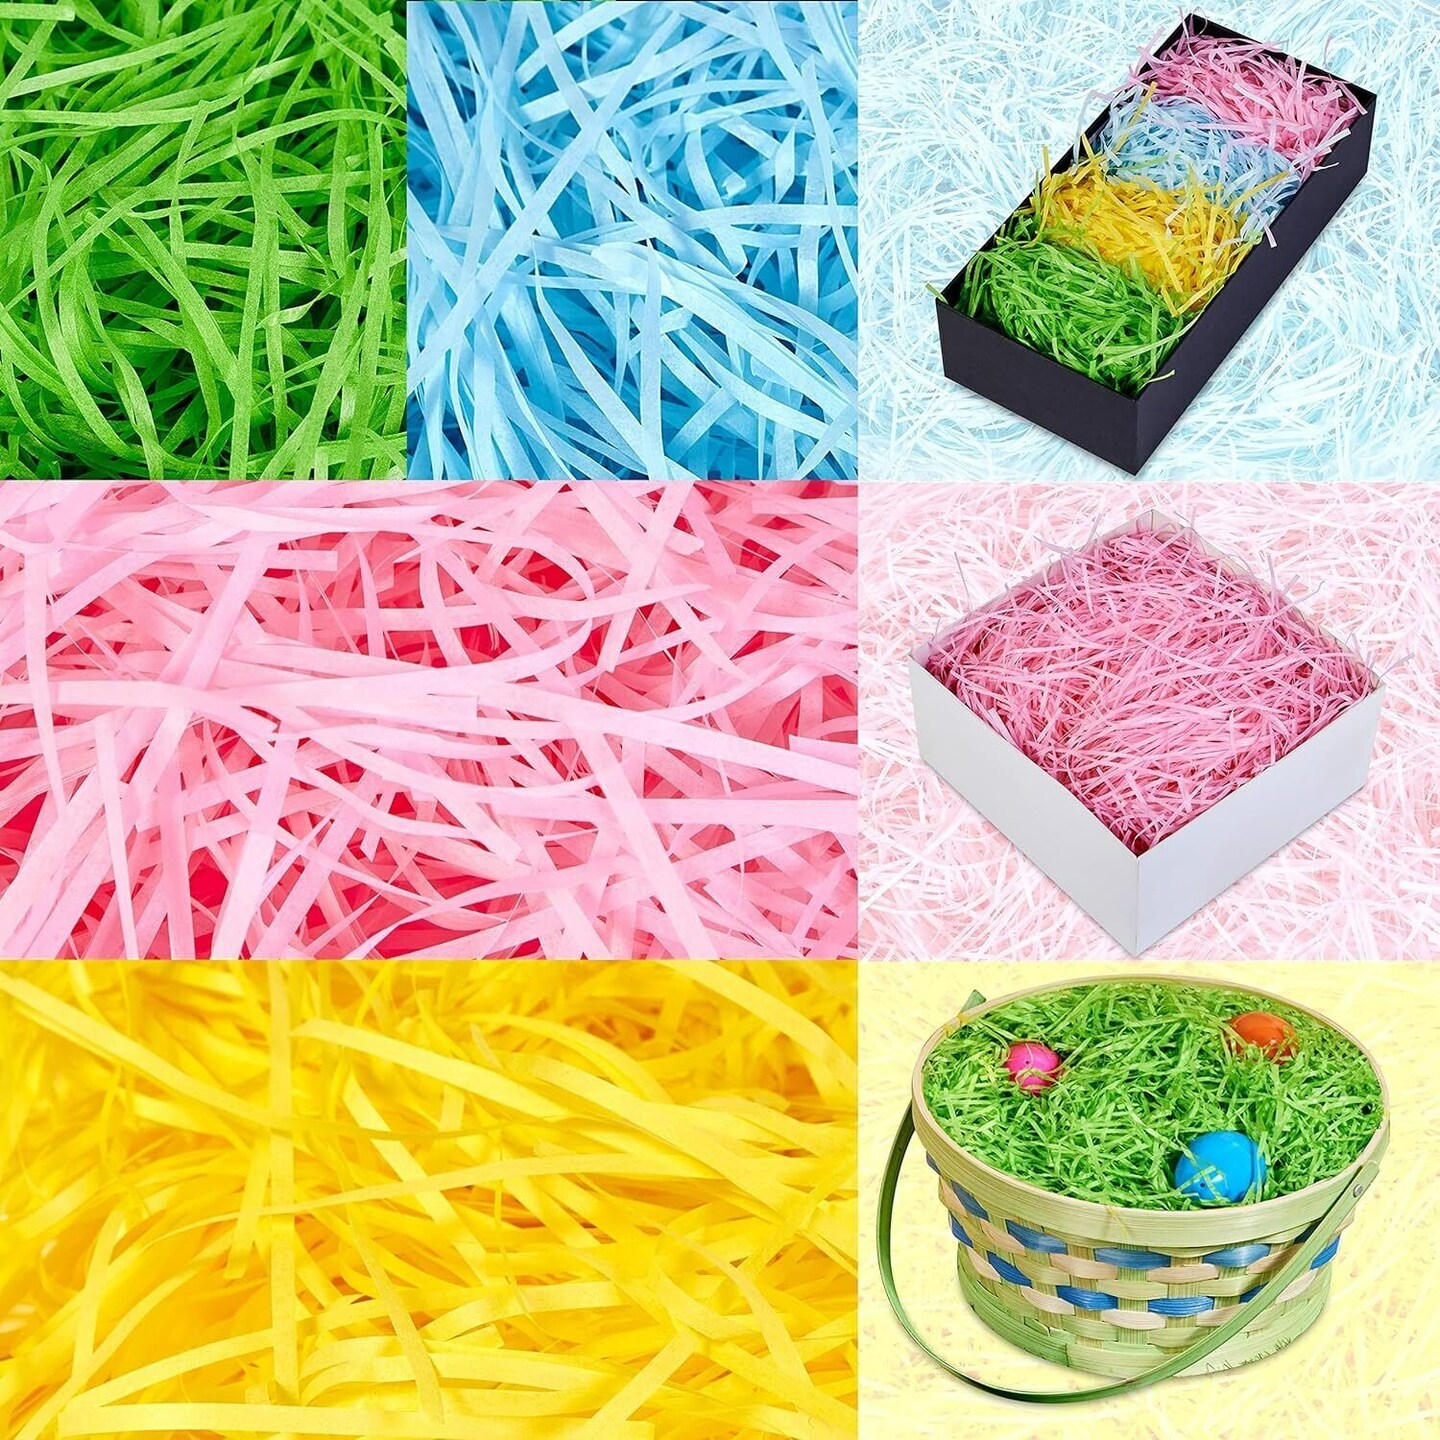 12 Oz Easter Fake Grass in 4 Colors Paper Shred Filler for Easter Basket Filling